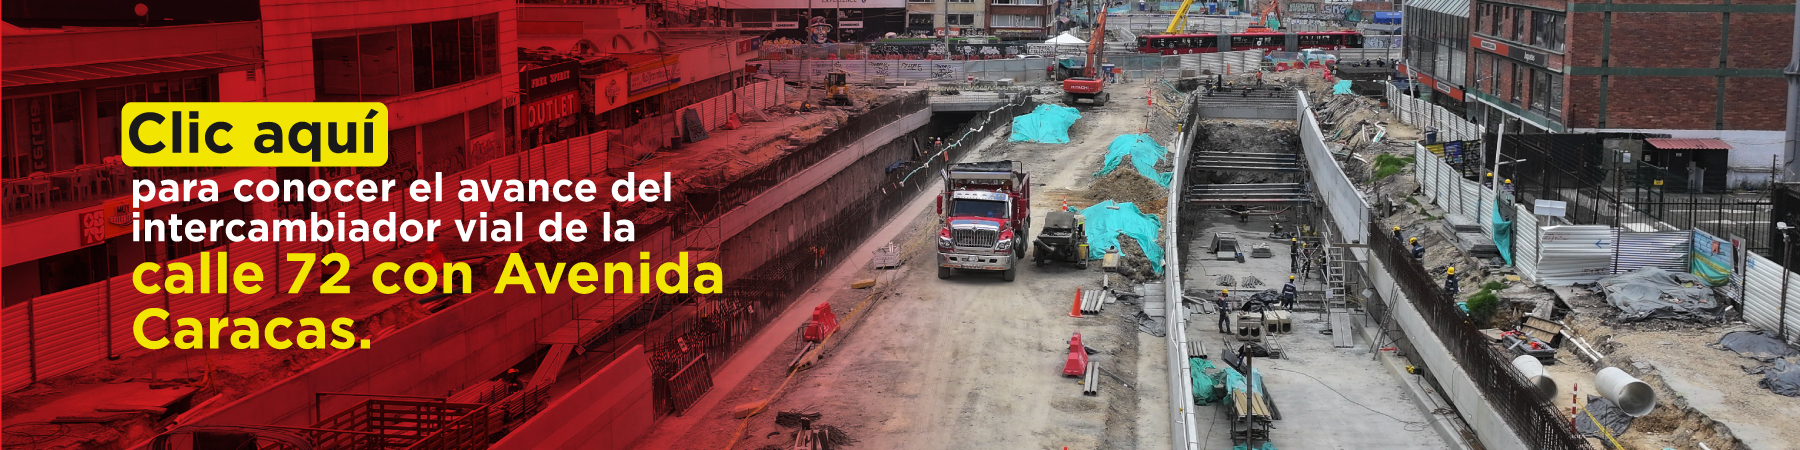 Clic aquí para conocer el avance del intercambiador vial de la calle 72 con Avenida Caracas